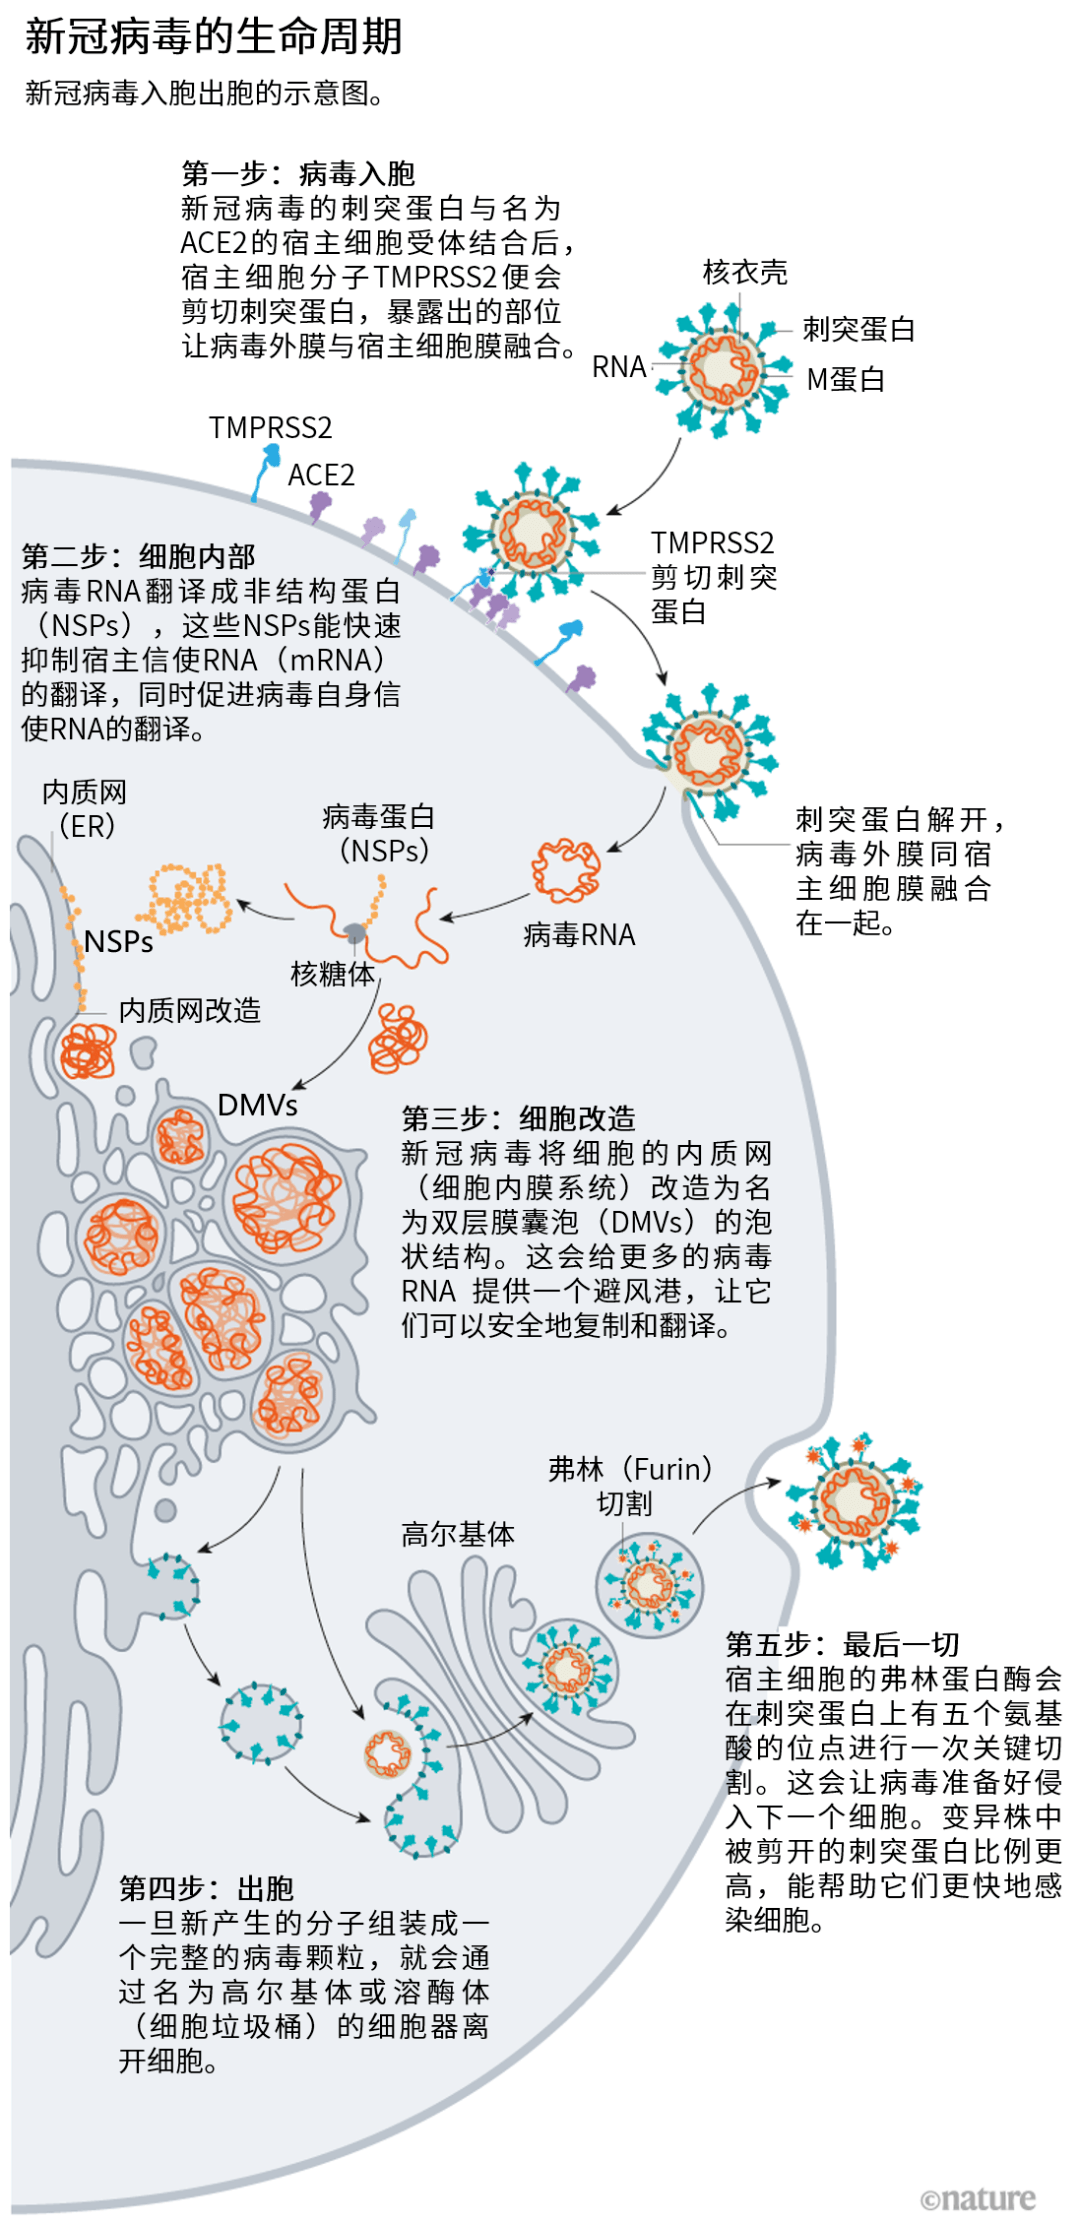 大致就是下面这个流程图 ↓入侵人体细胞的过程大致分5步:病毒侵入